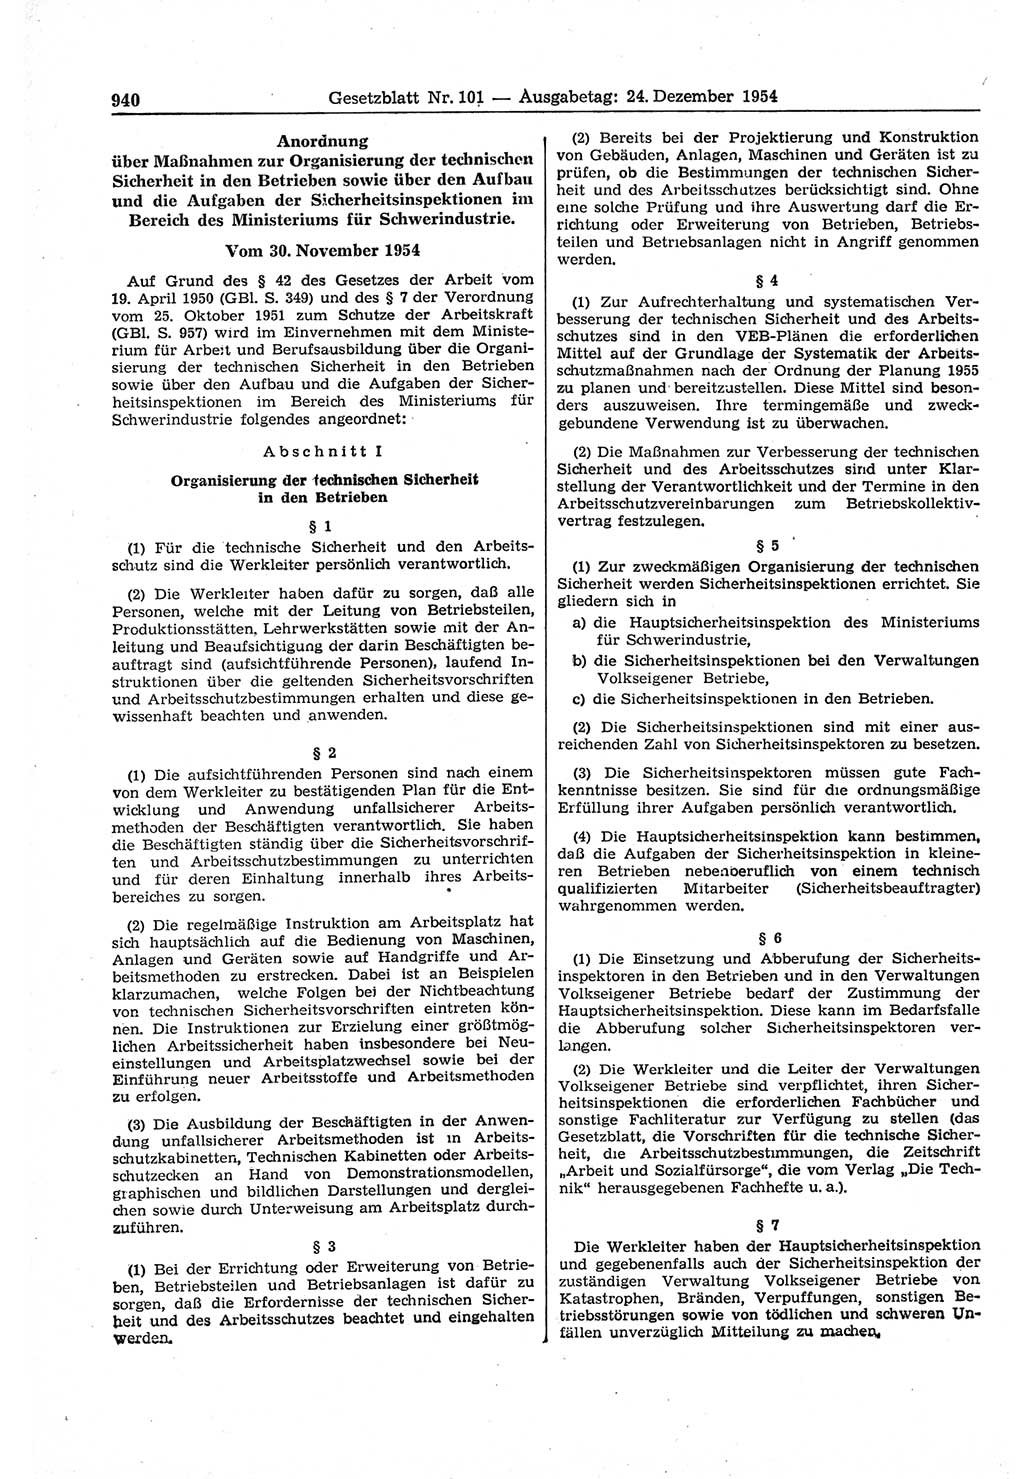 Gesetzblatt (GBl.) der Deutschen Demokratischen Republik (DDR) 1954, Seite 940 (GBl. DDR 1954, S. 940)